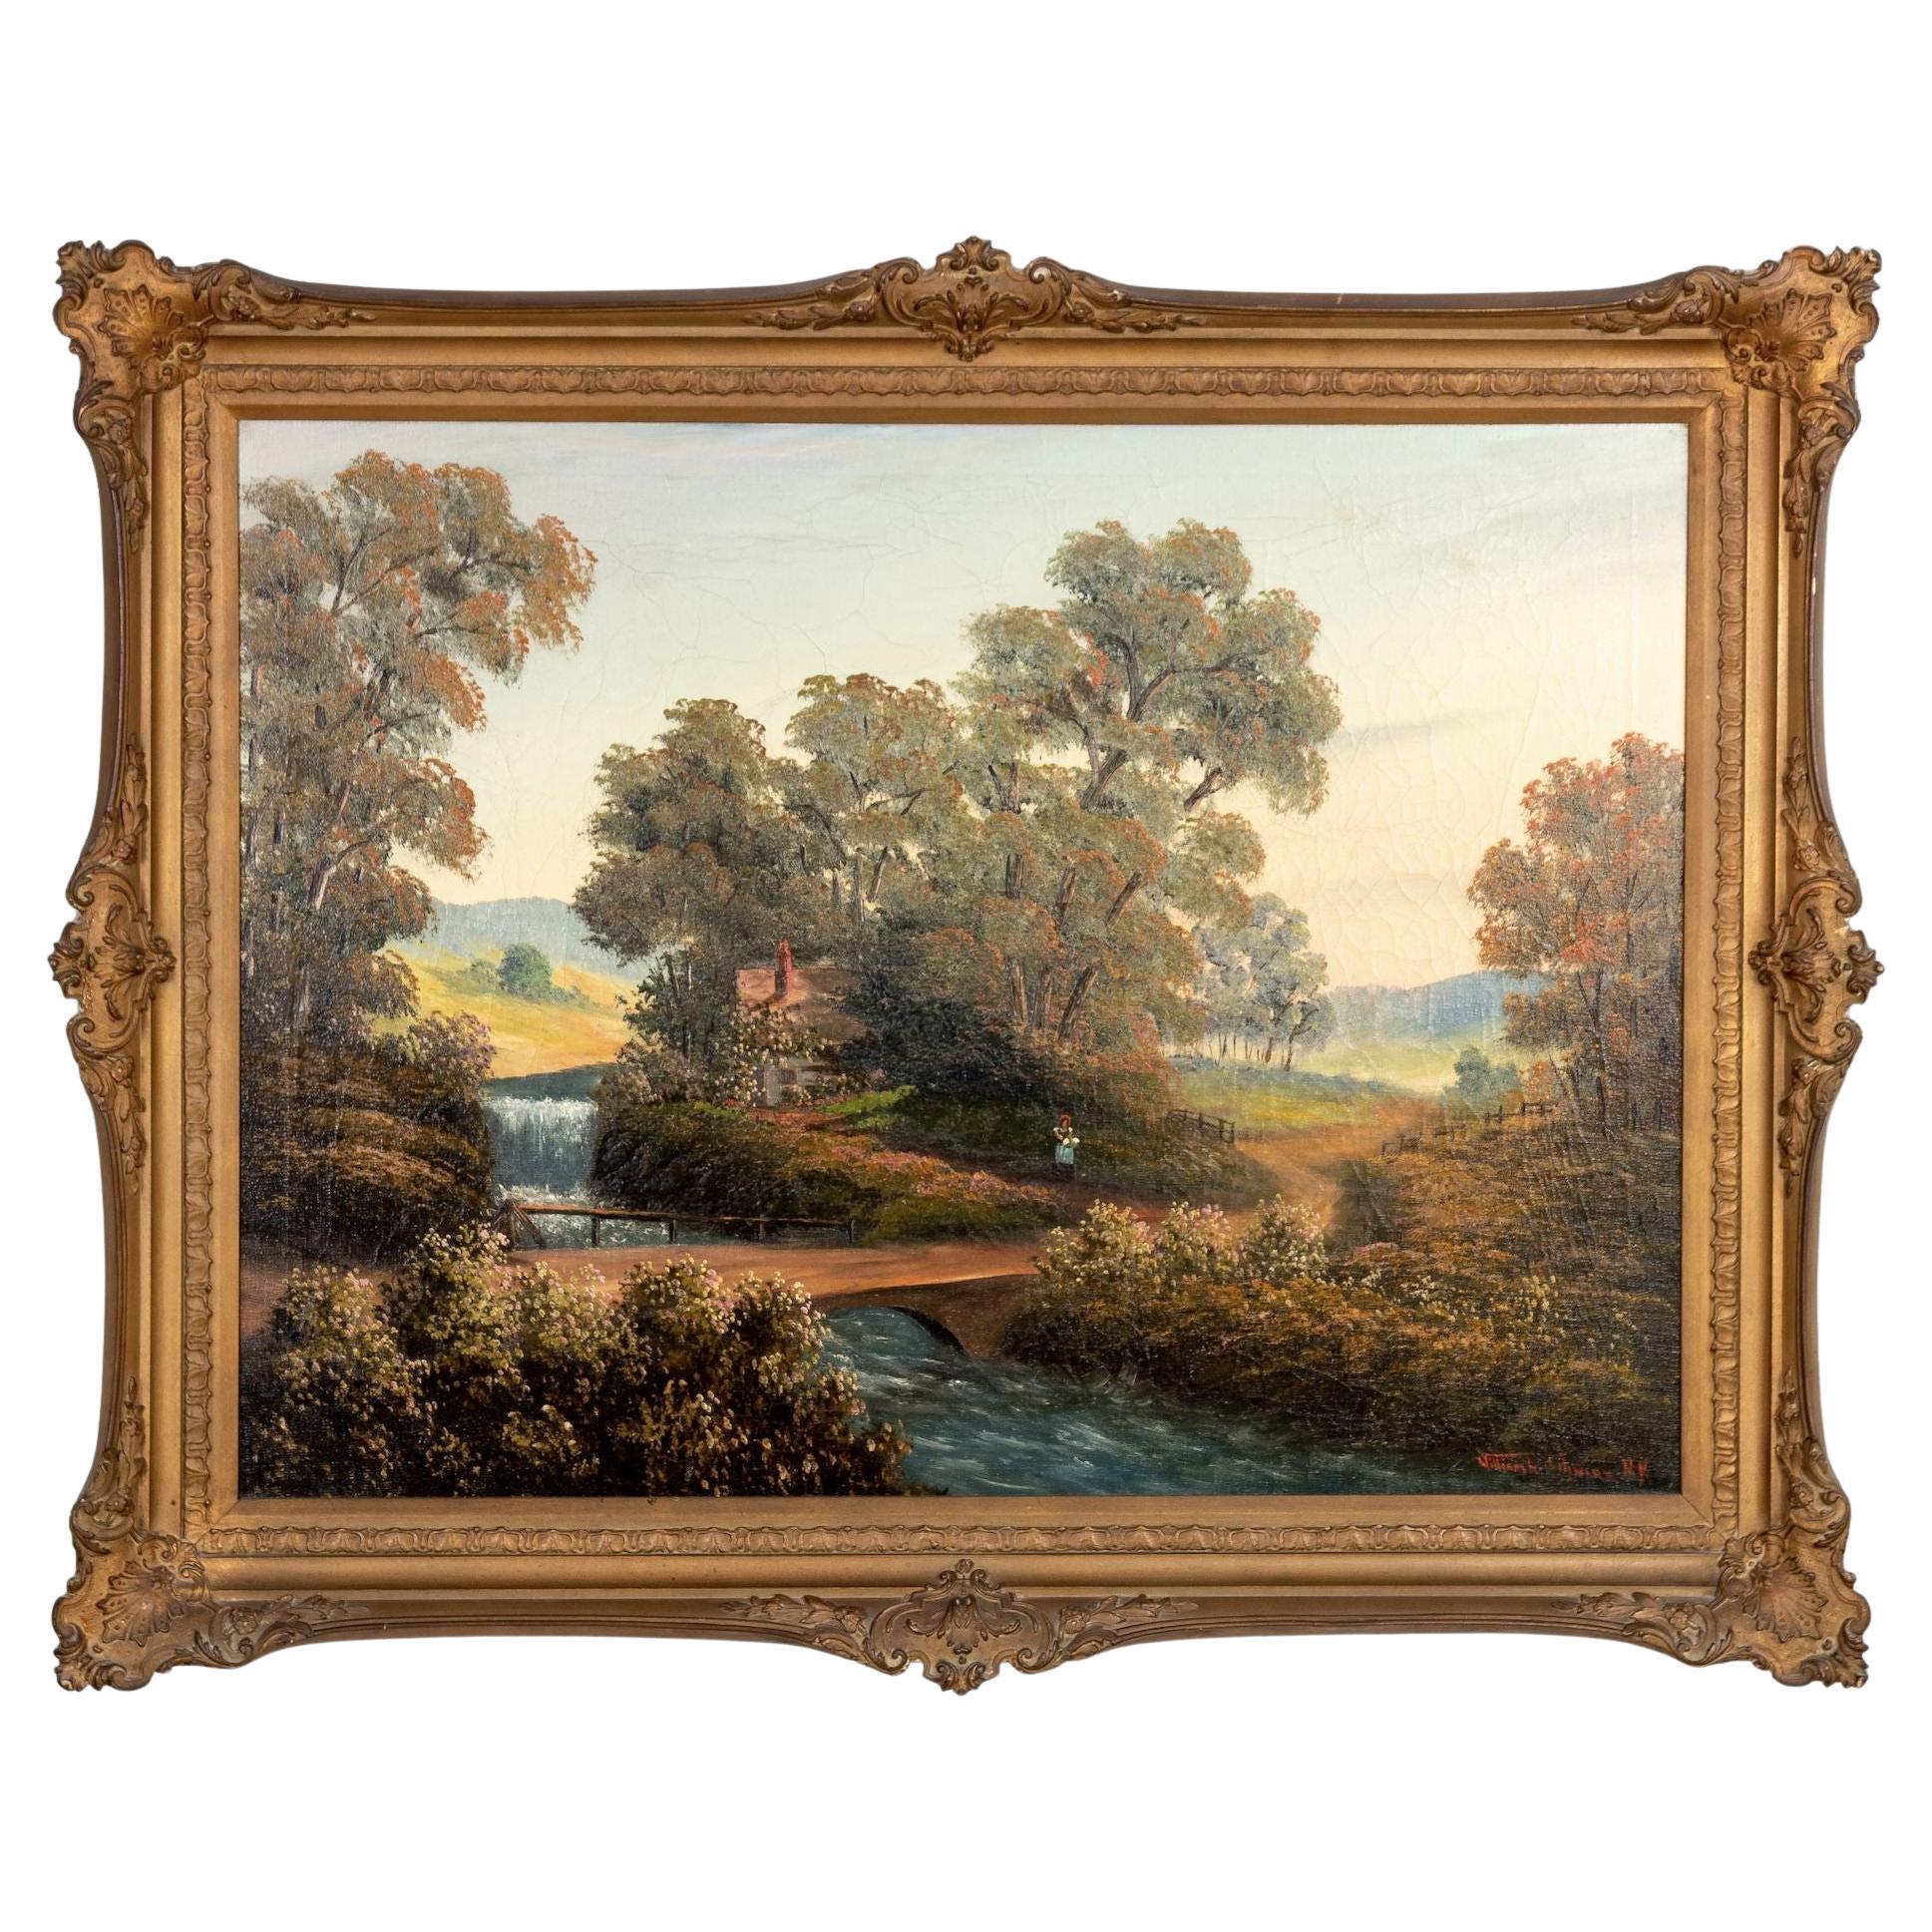 Gemälde der Hudson River School, Öl auf Leinwand, 20. Jahrhundert